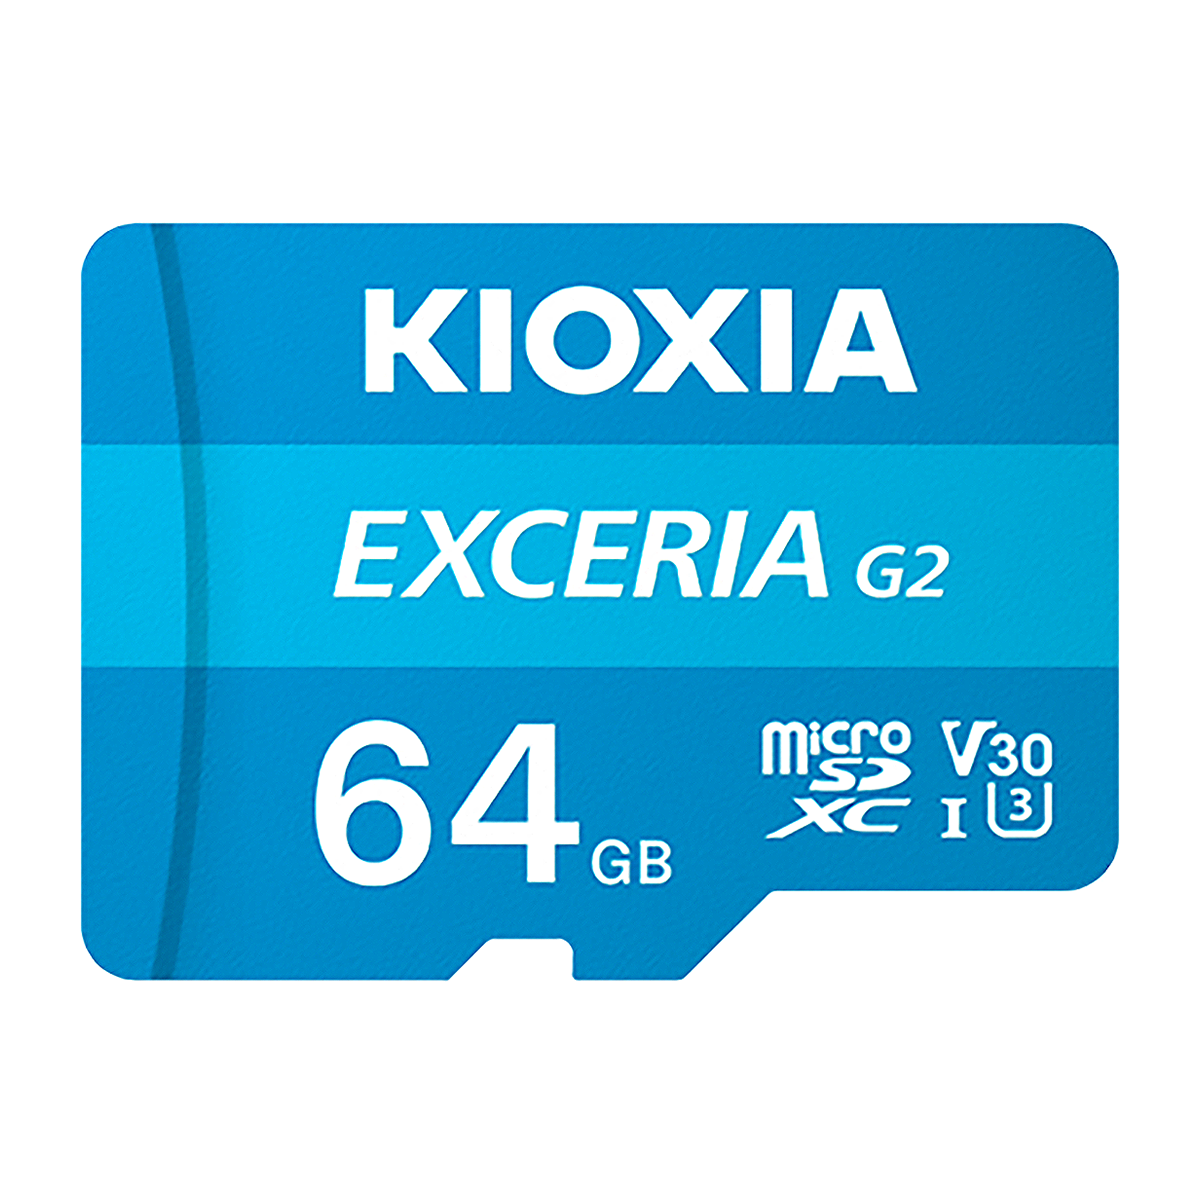 کارت حافظه microSDXC کیوکسیا مدل EXCERIA G2 کلاس 10 استاندارد UHS-I سرعت 100MBps ظرفیت 64 گیگابایت-small-image